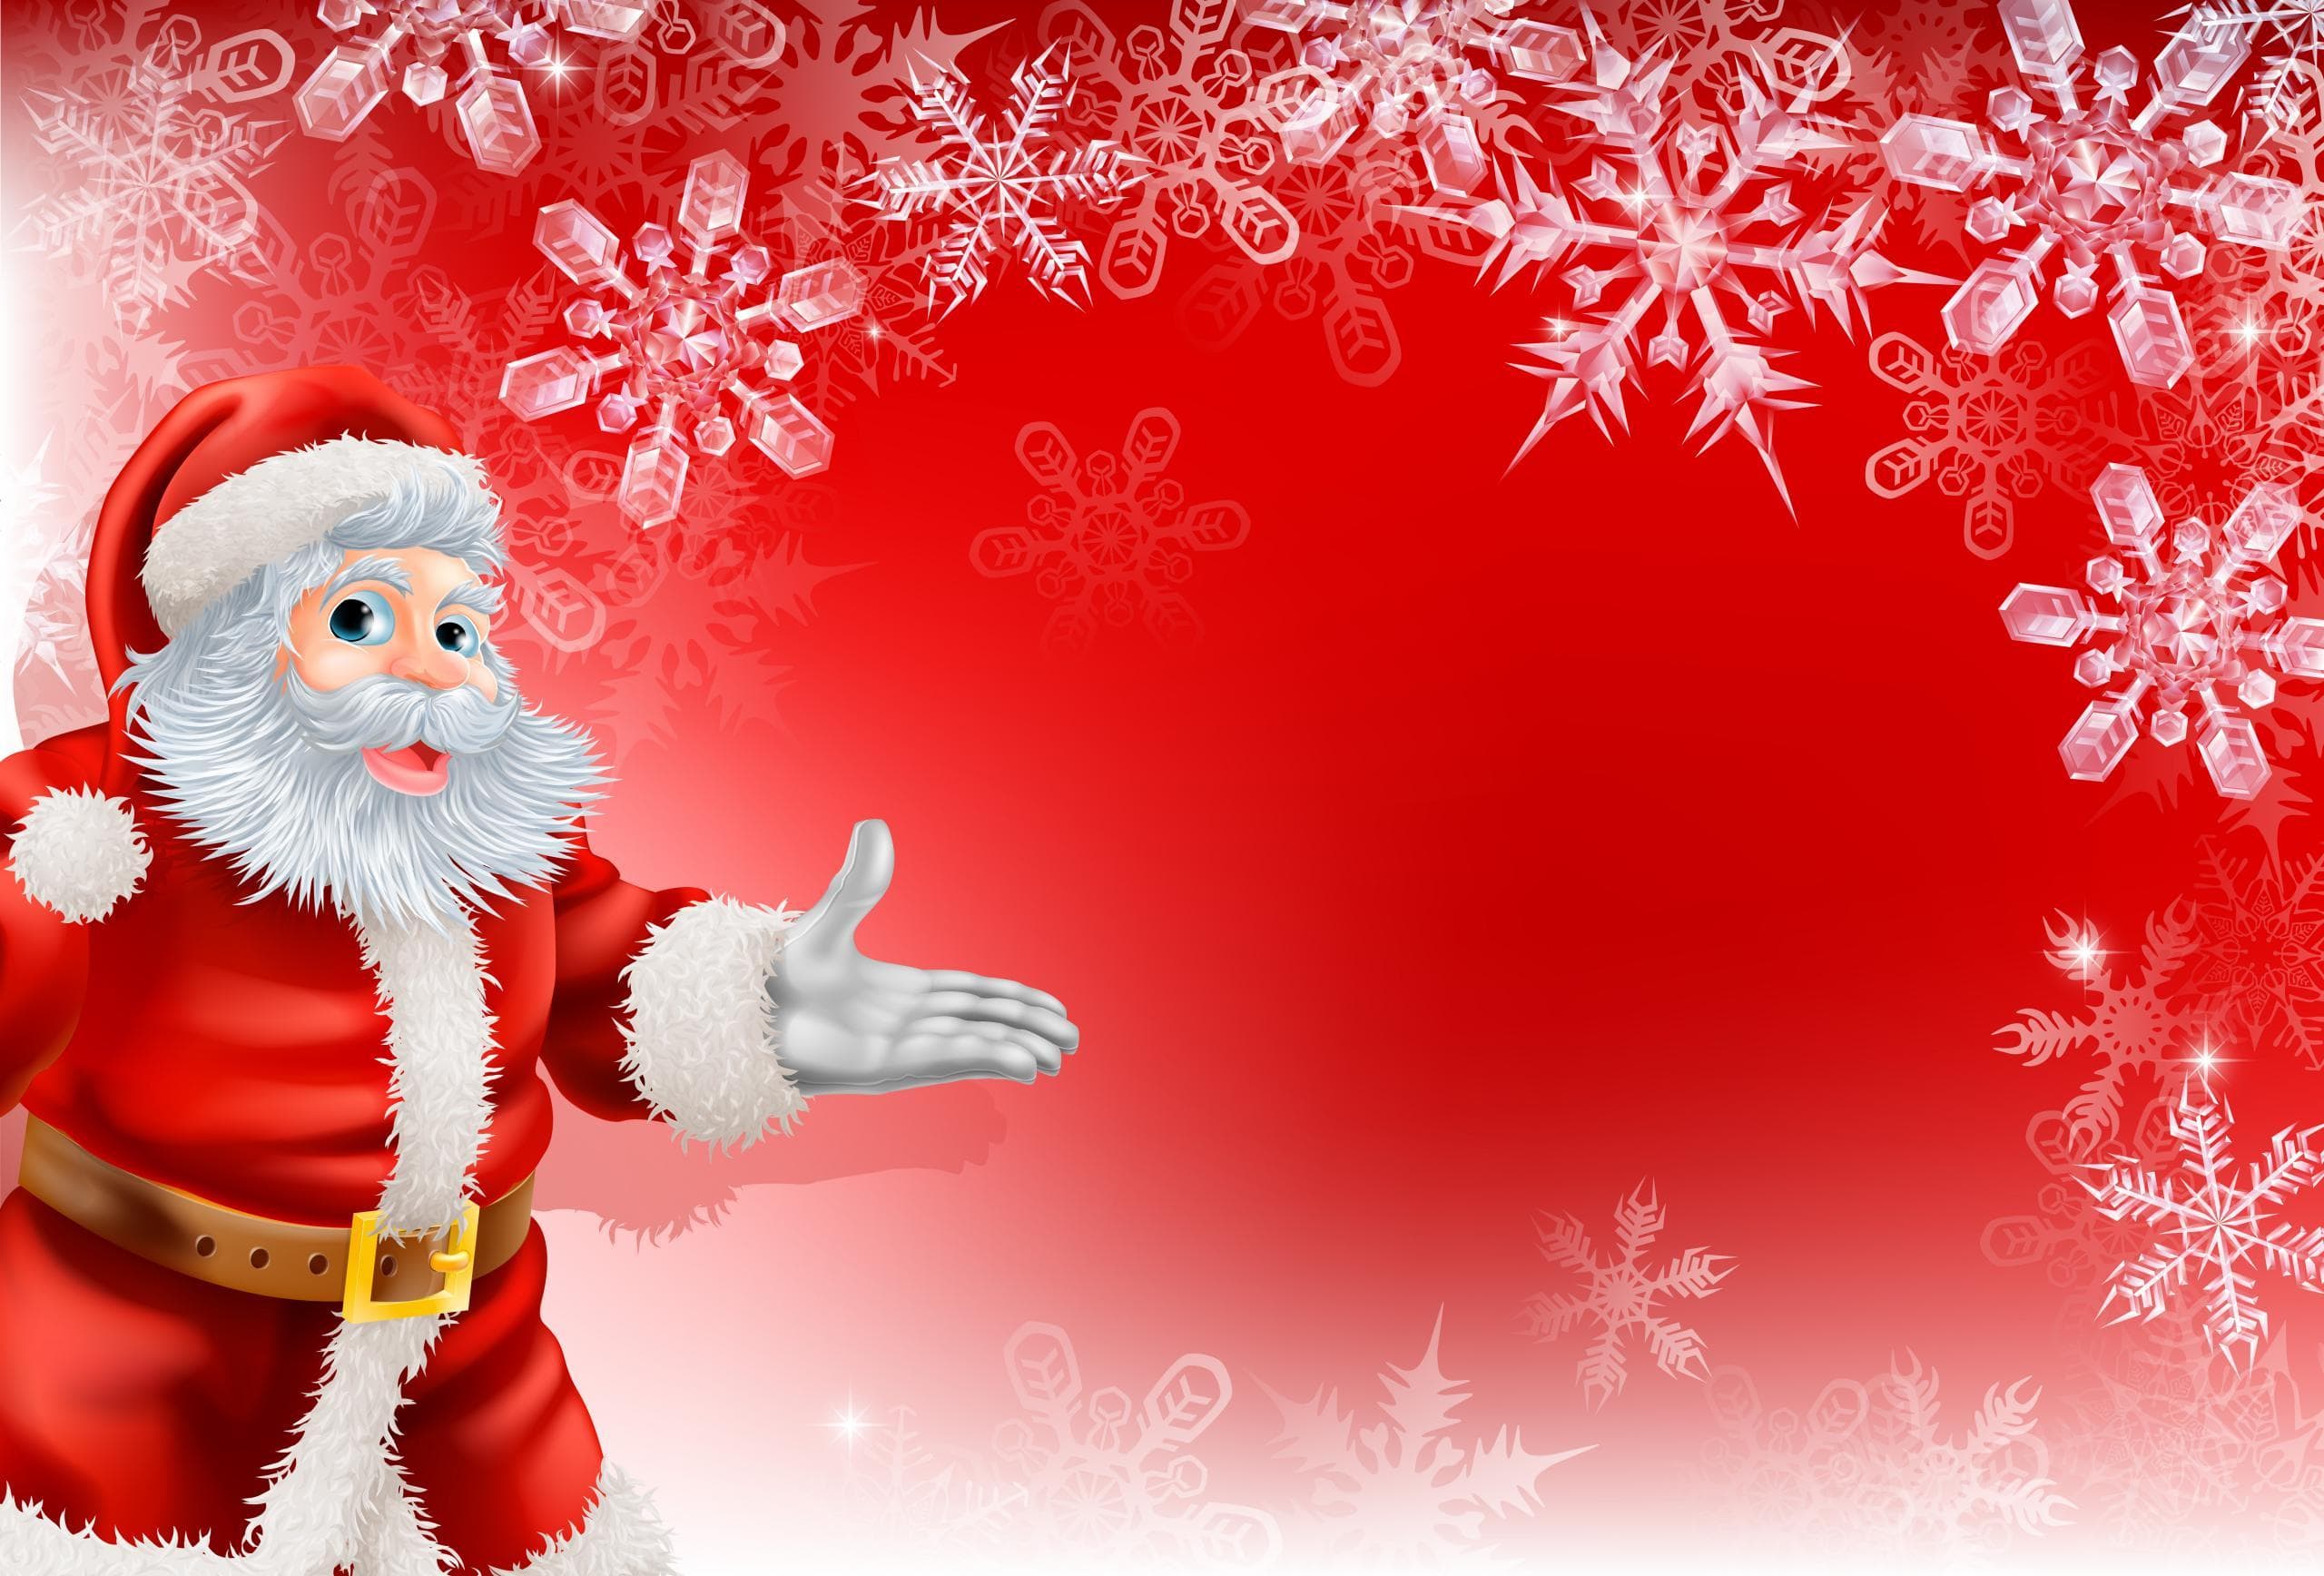 Santa Claus Hd Wallpaper - Christmas With Santa Background , HD Wallpaper & Backgrounds